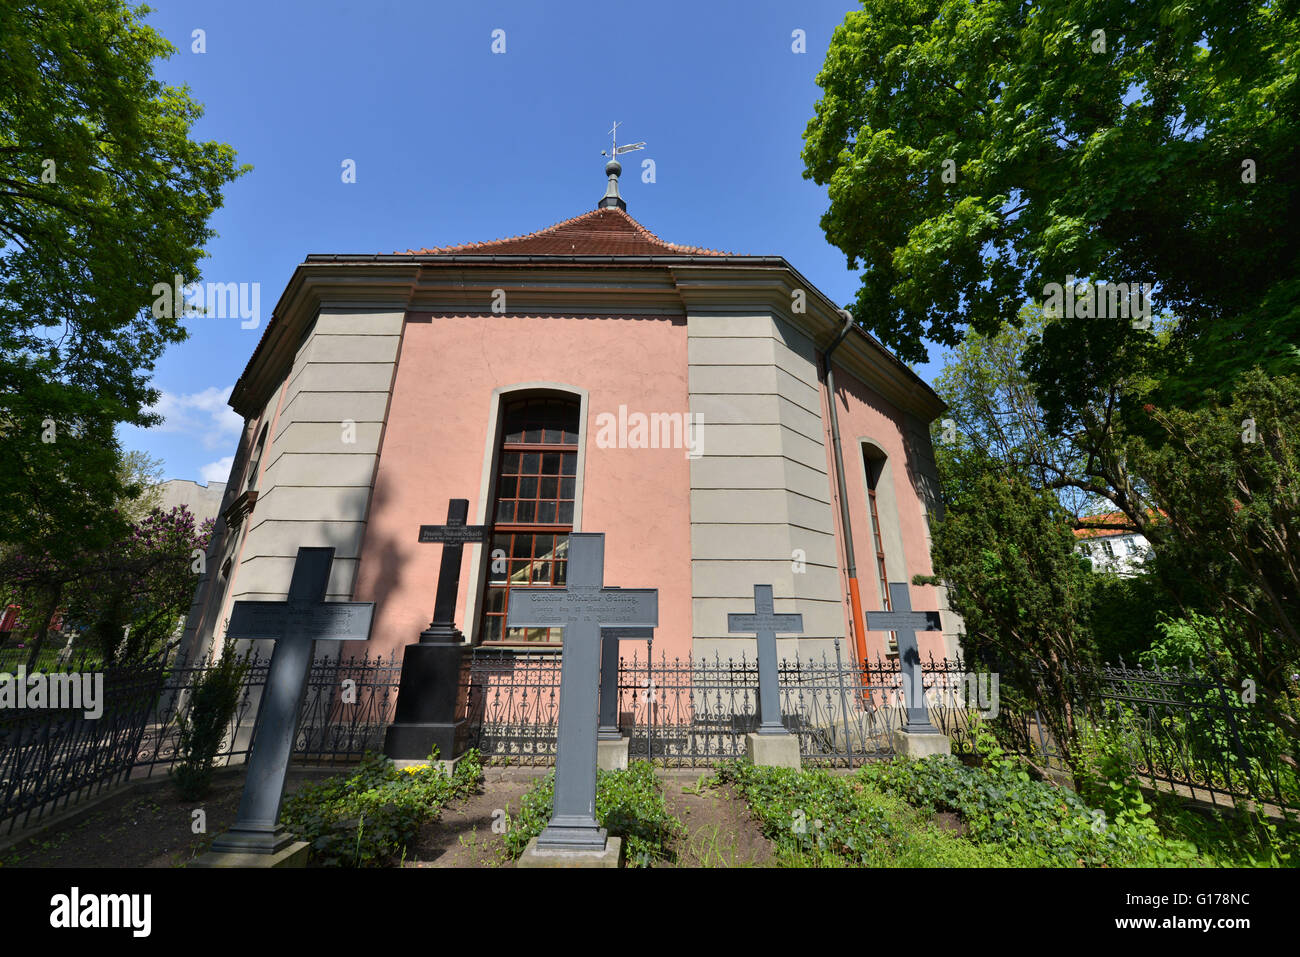 Alte Dorfkirche, Clayallee, Zehlendorf, Berlino, Deutschland Foto Stock